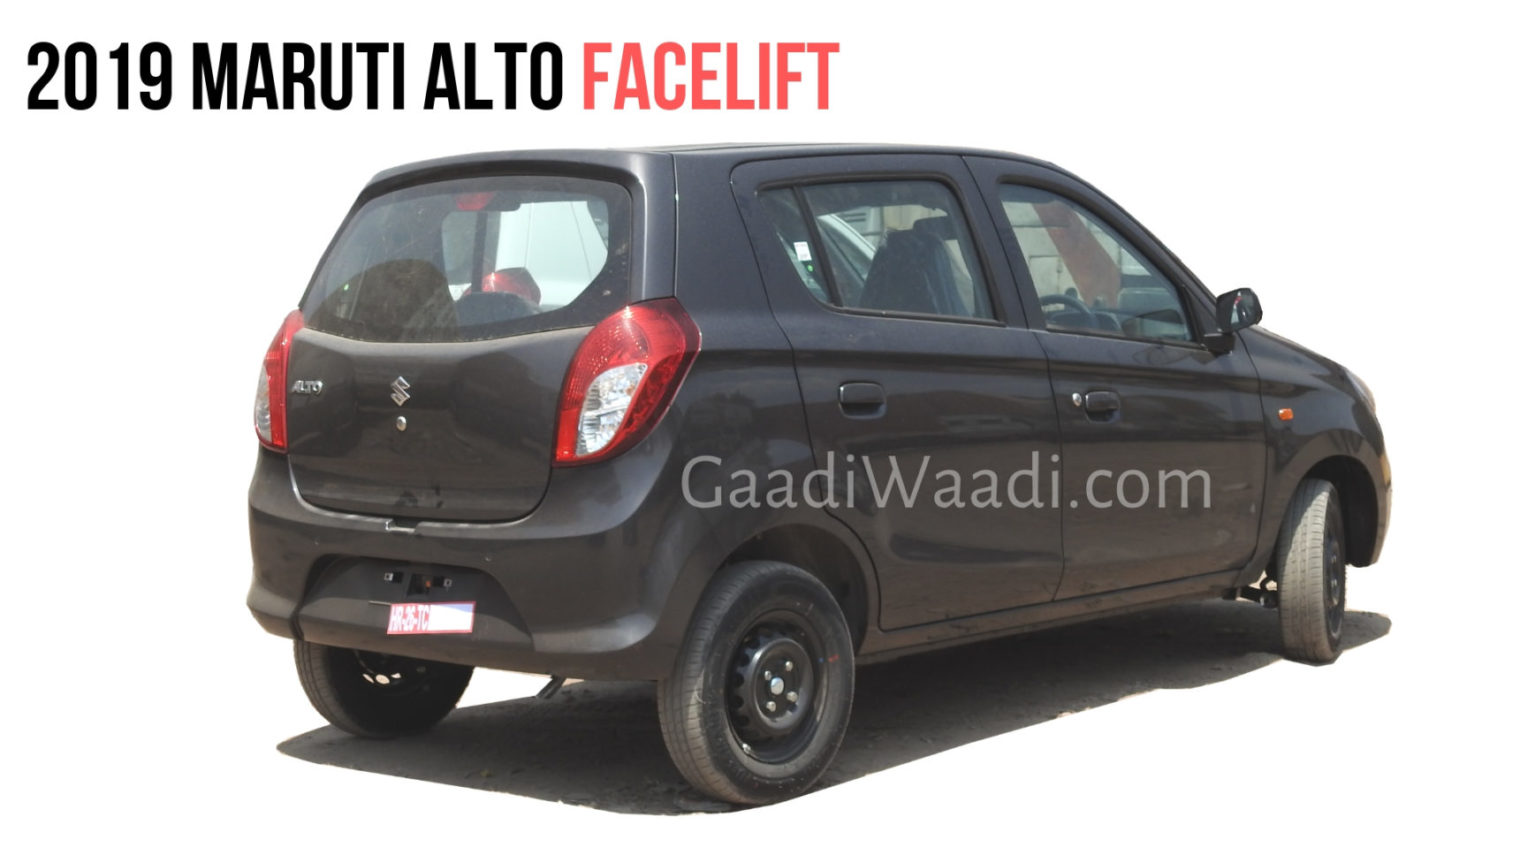 2019 Maruti Suzuki Alto facelift price, updates to the exteriors